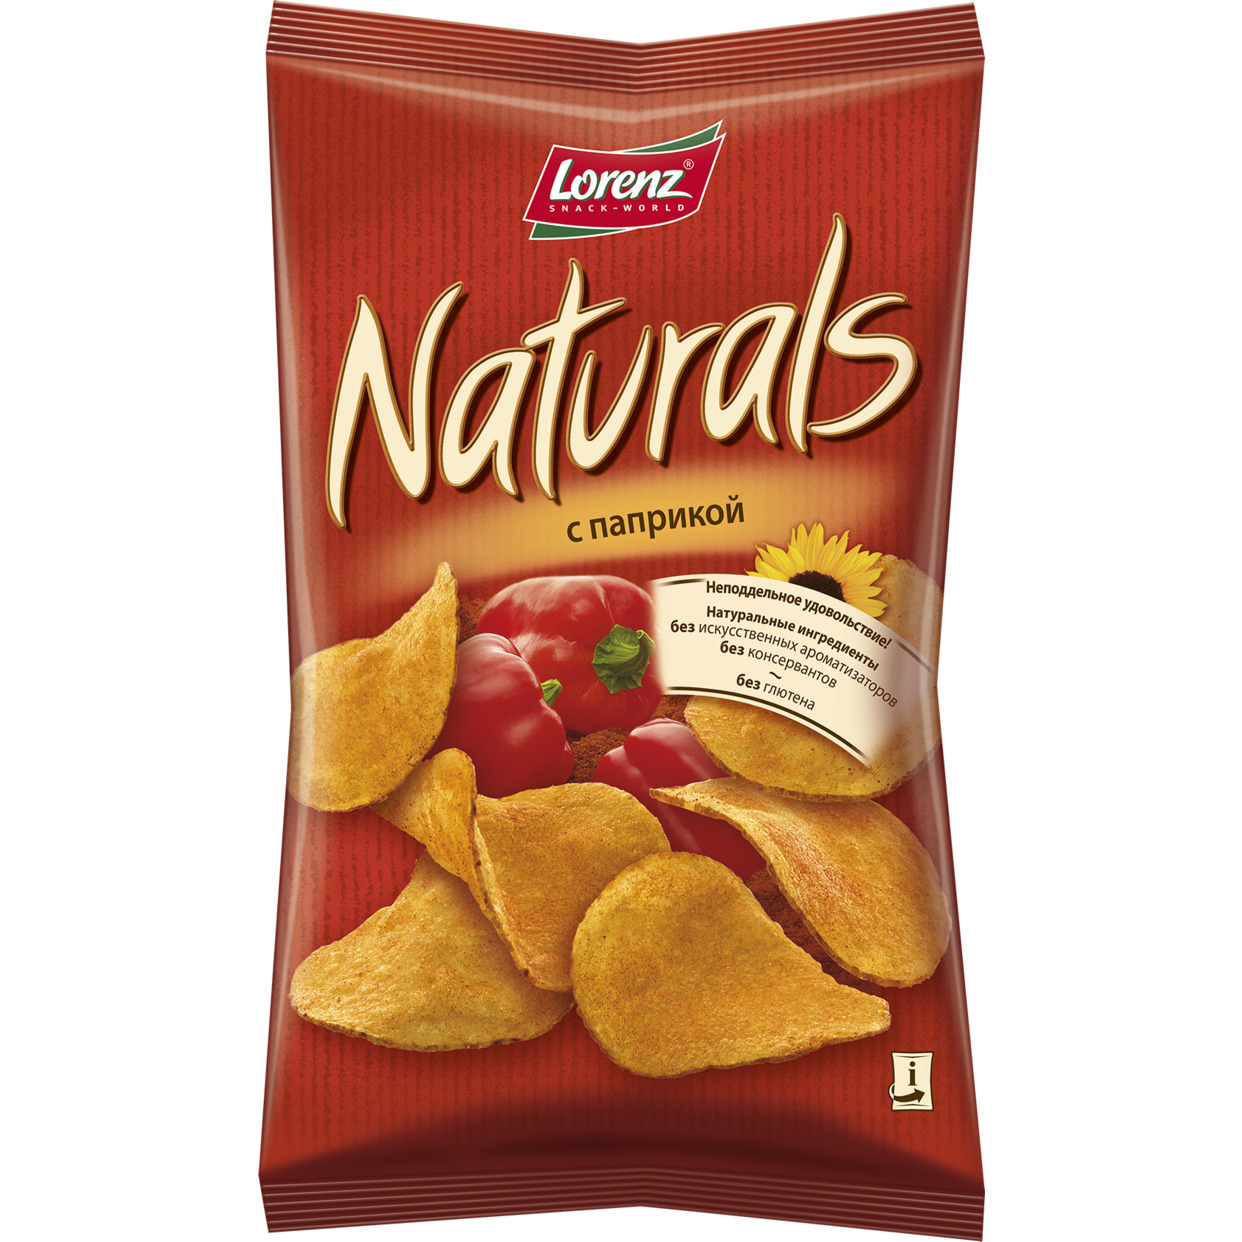 Картофельные чипсы “Naturals” с паприкой, 100 гр. по акции в Пятерочке